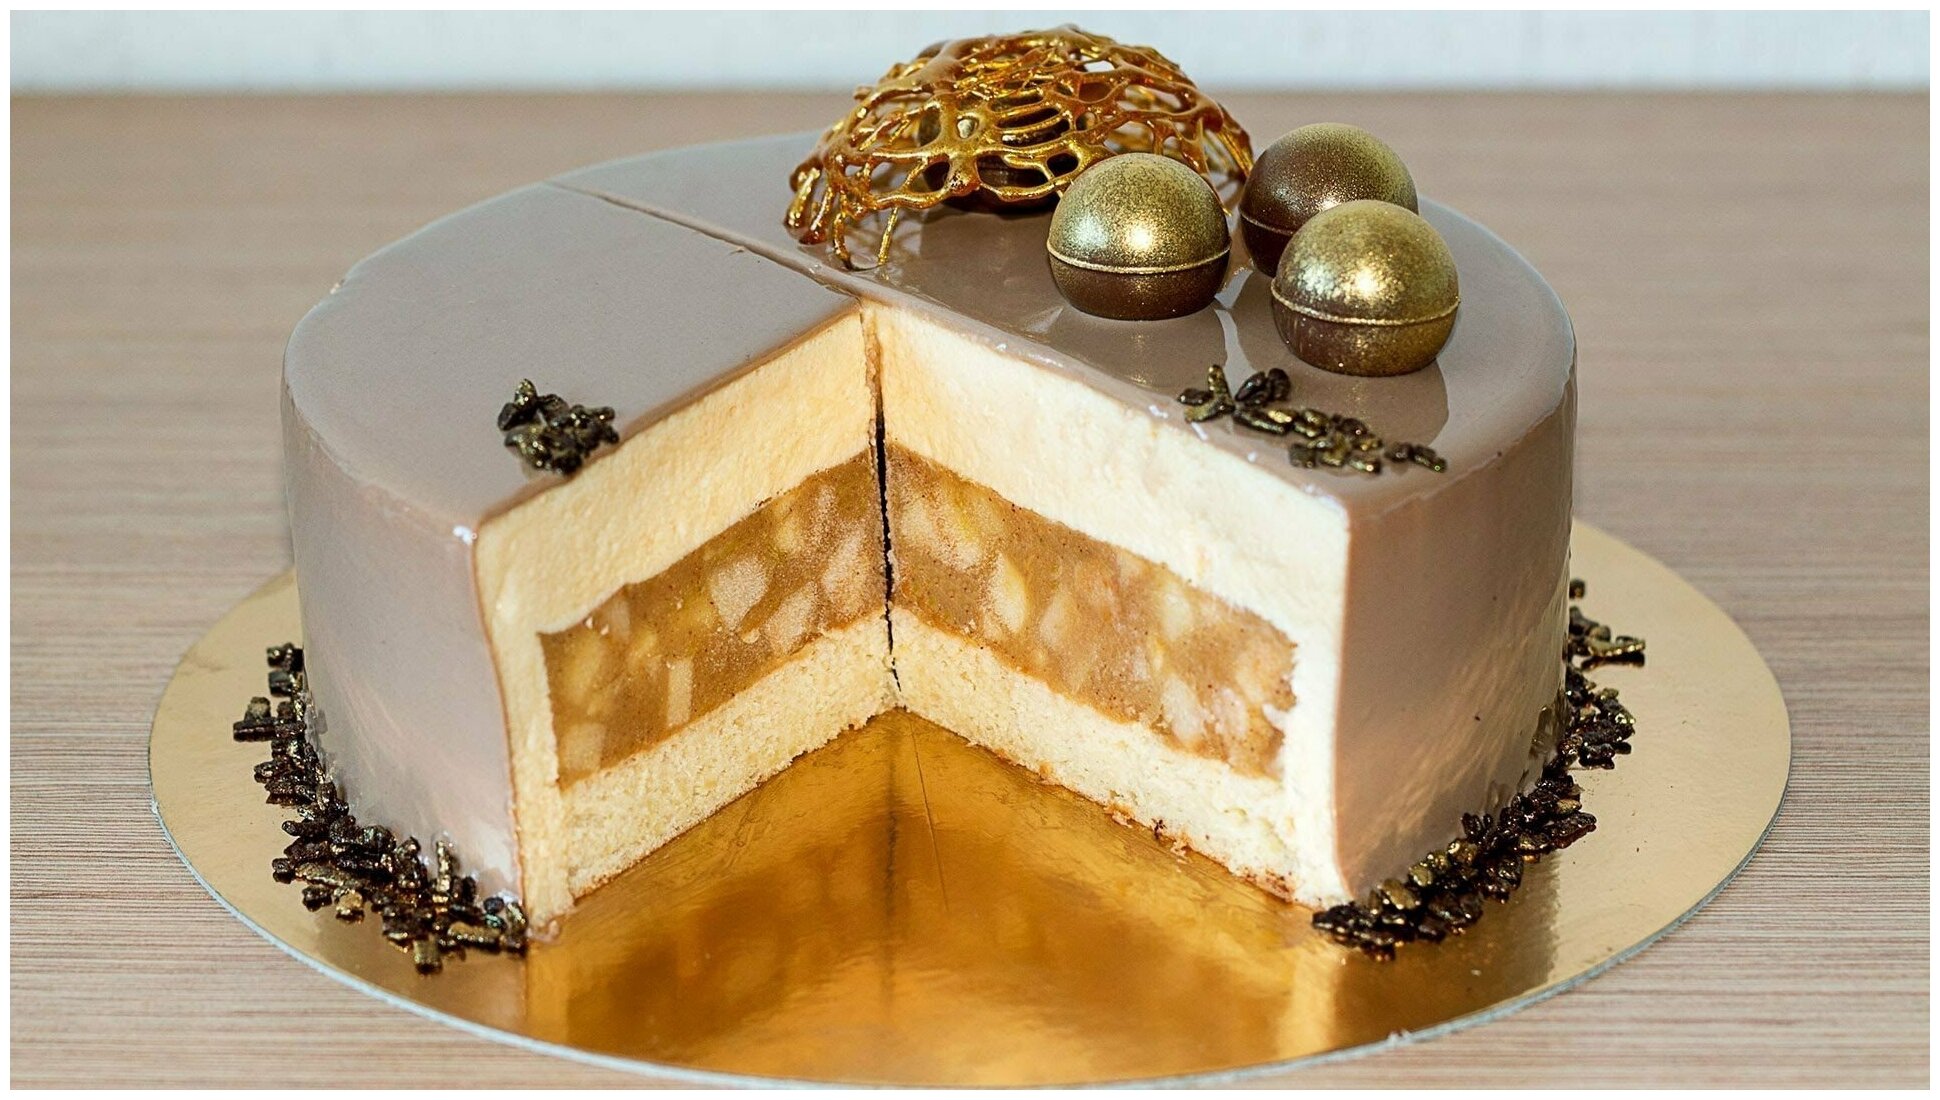 Подложка для торта, диаметр 18 см, толщина 1мм, золото, кондитерская многоразовая для пирожного, десерта, в коробку для торта, пирожных, пирогов